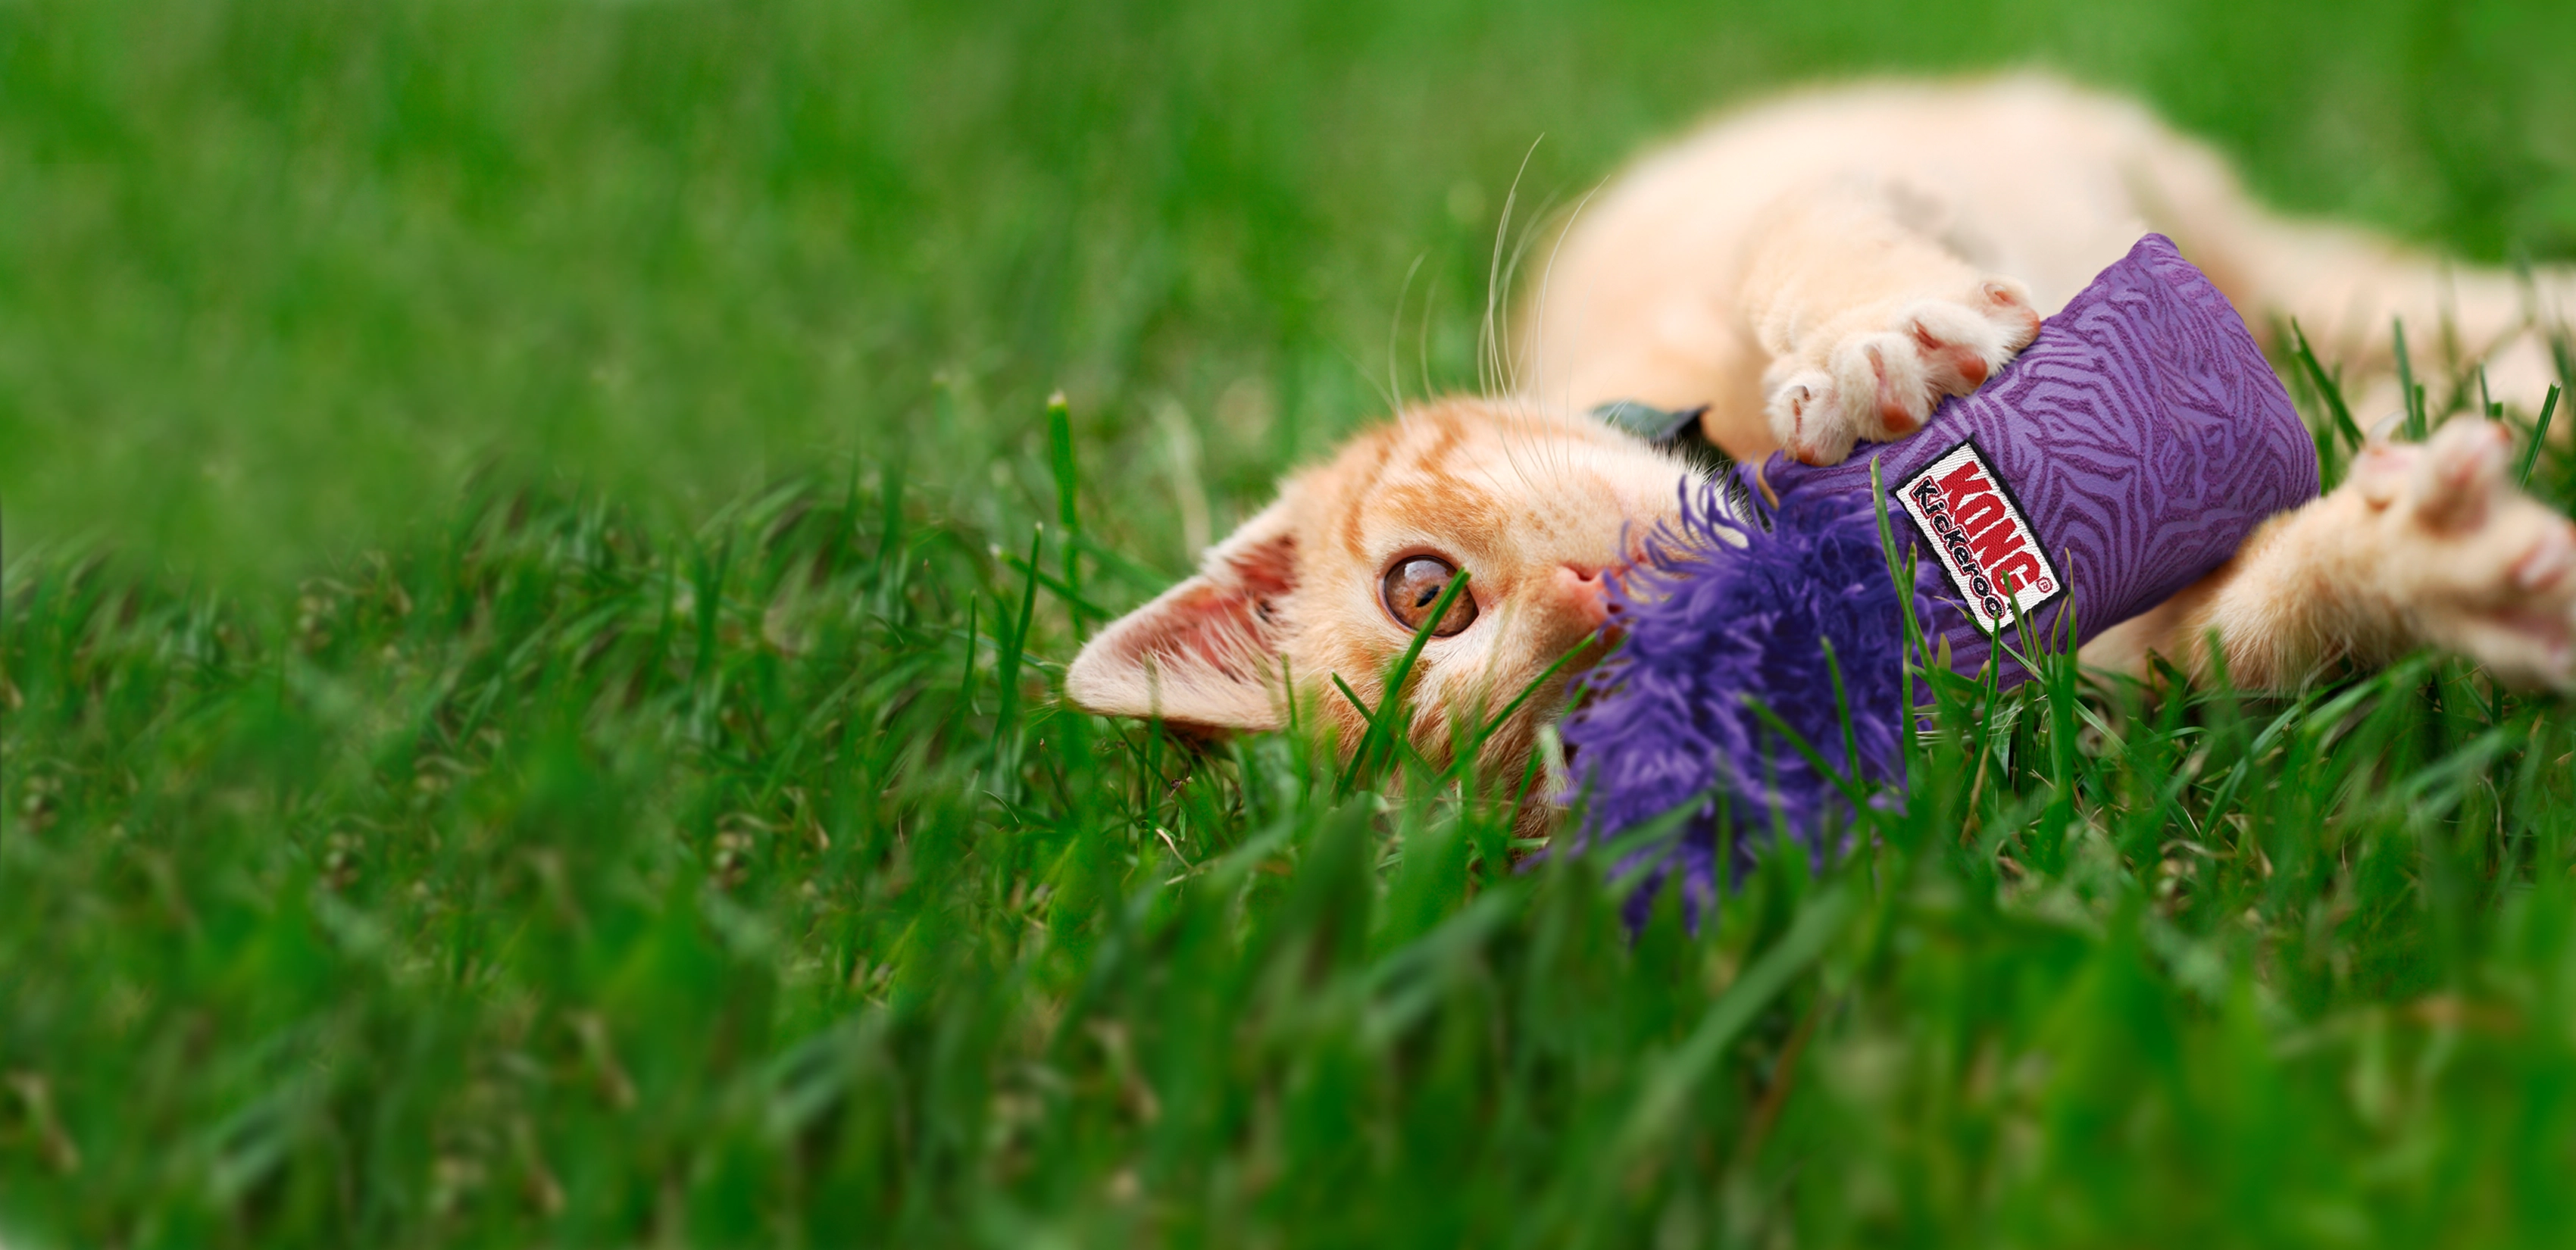 Gato jugando con un KONG kickeroo en la hierba.